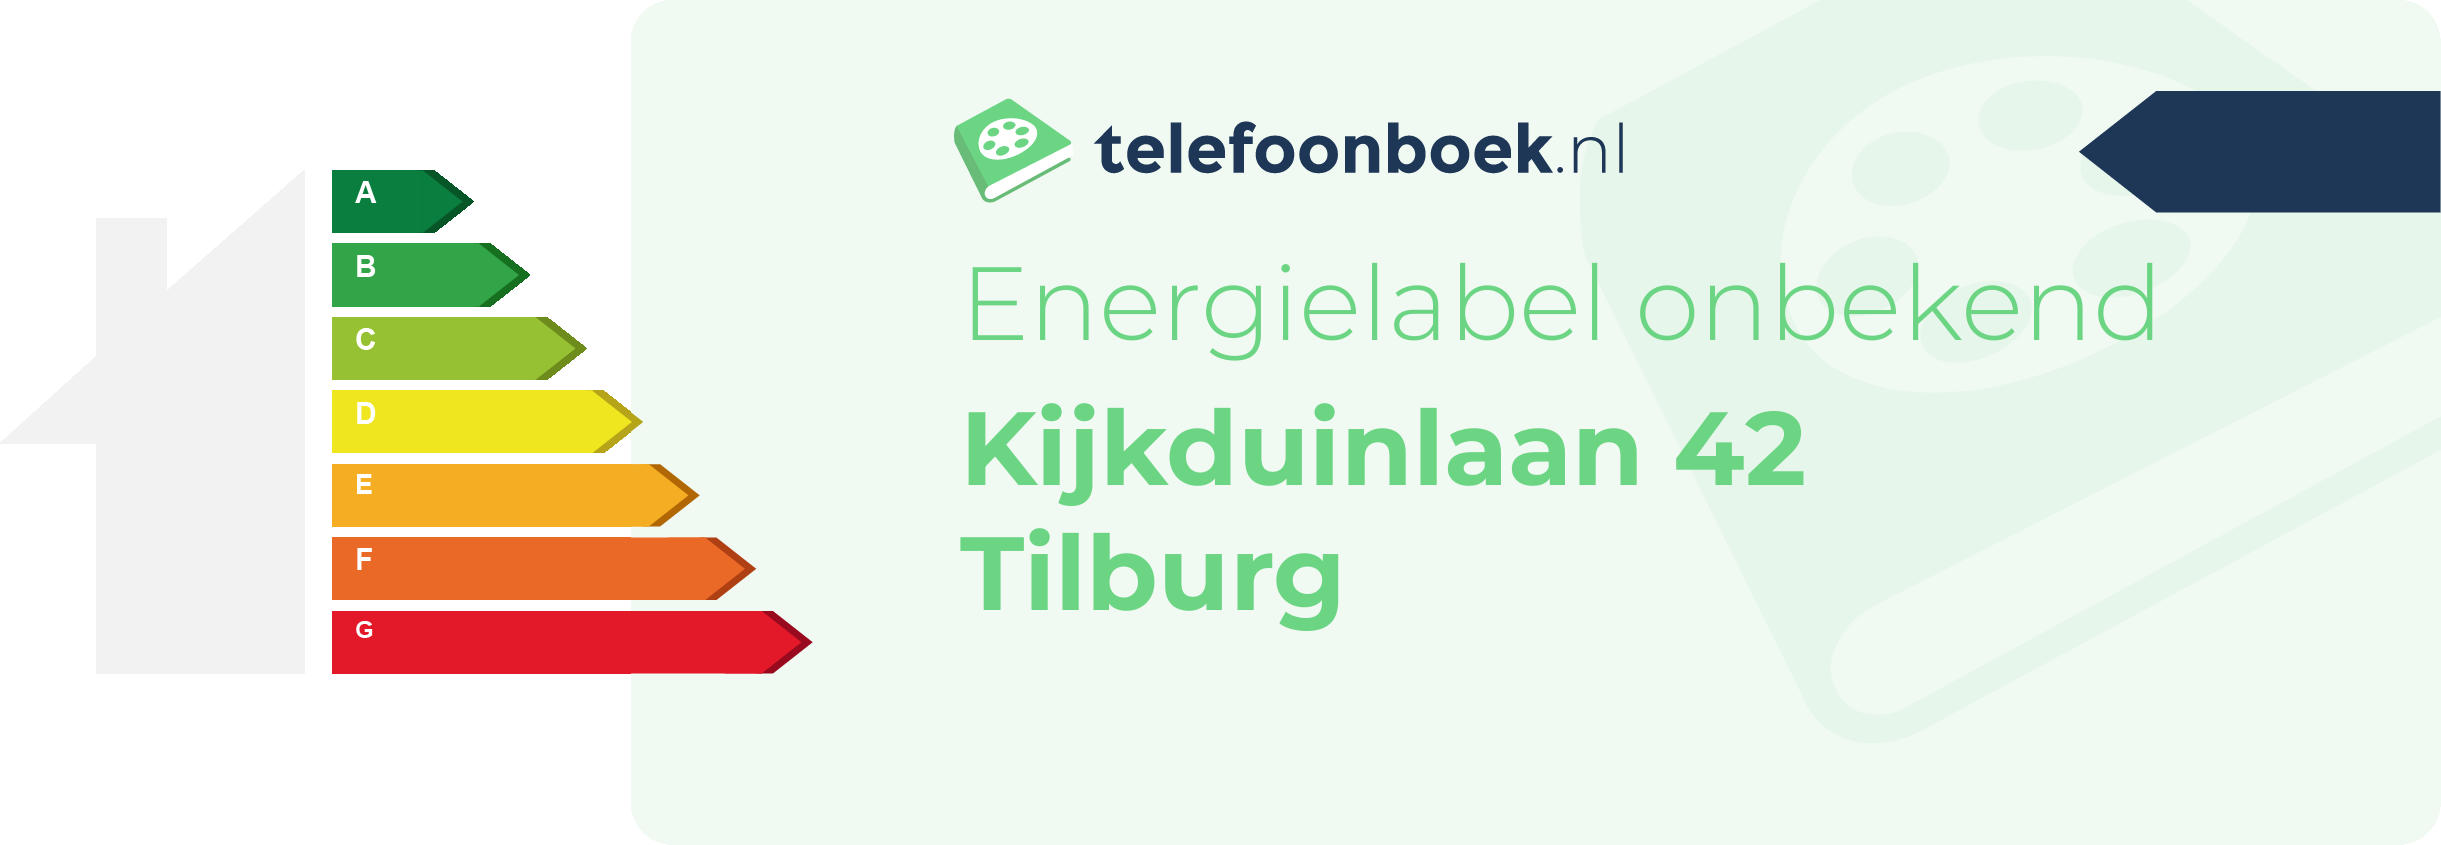 Energielabel Kijkduinlaan 42 Tilburg